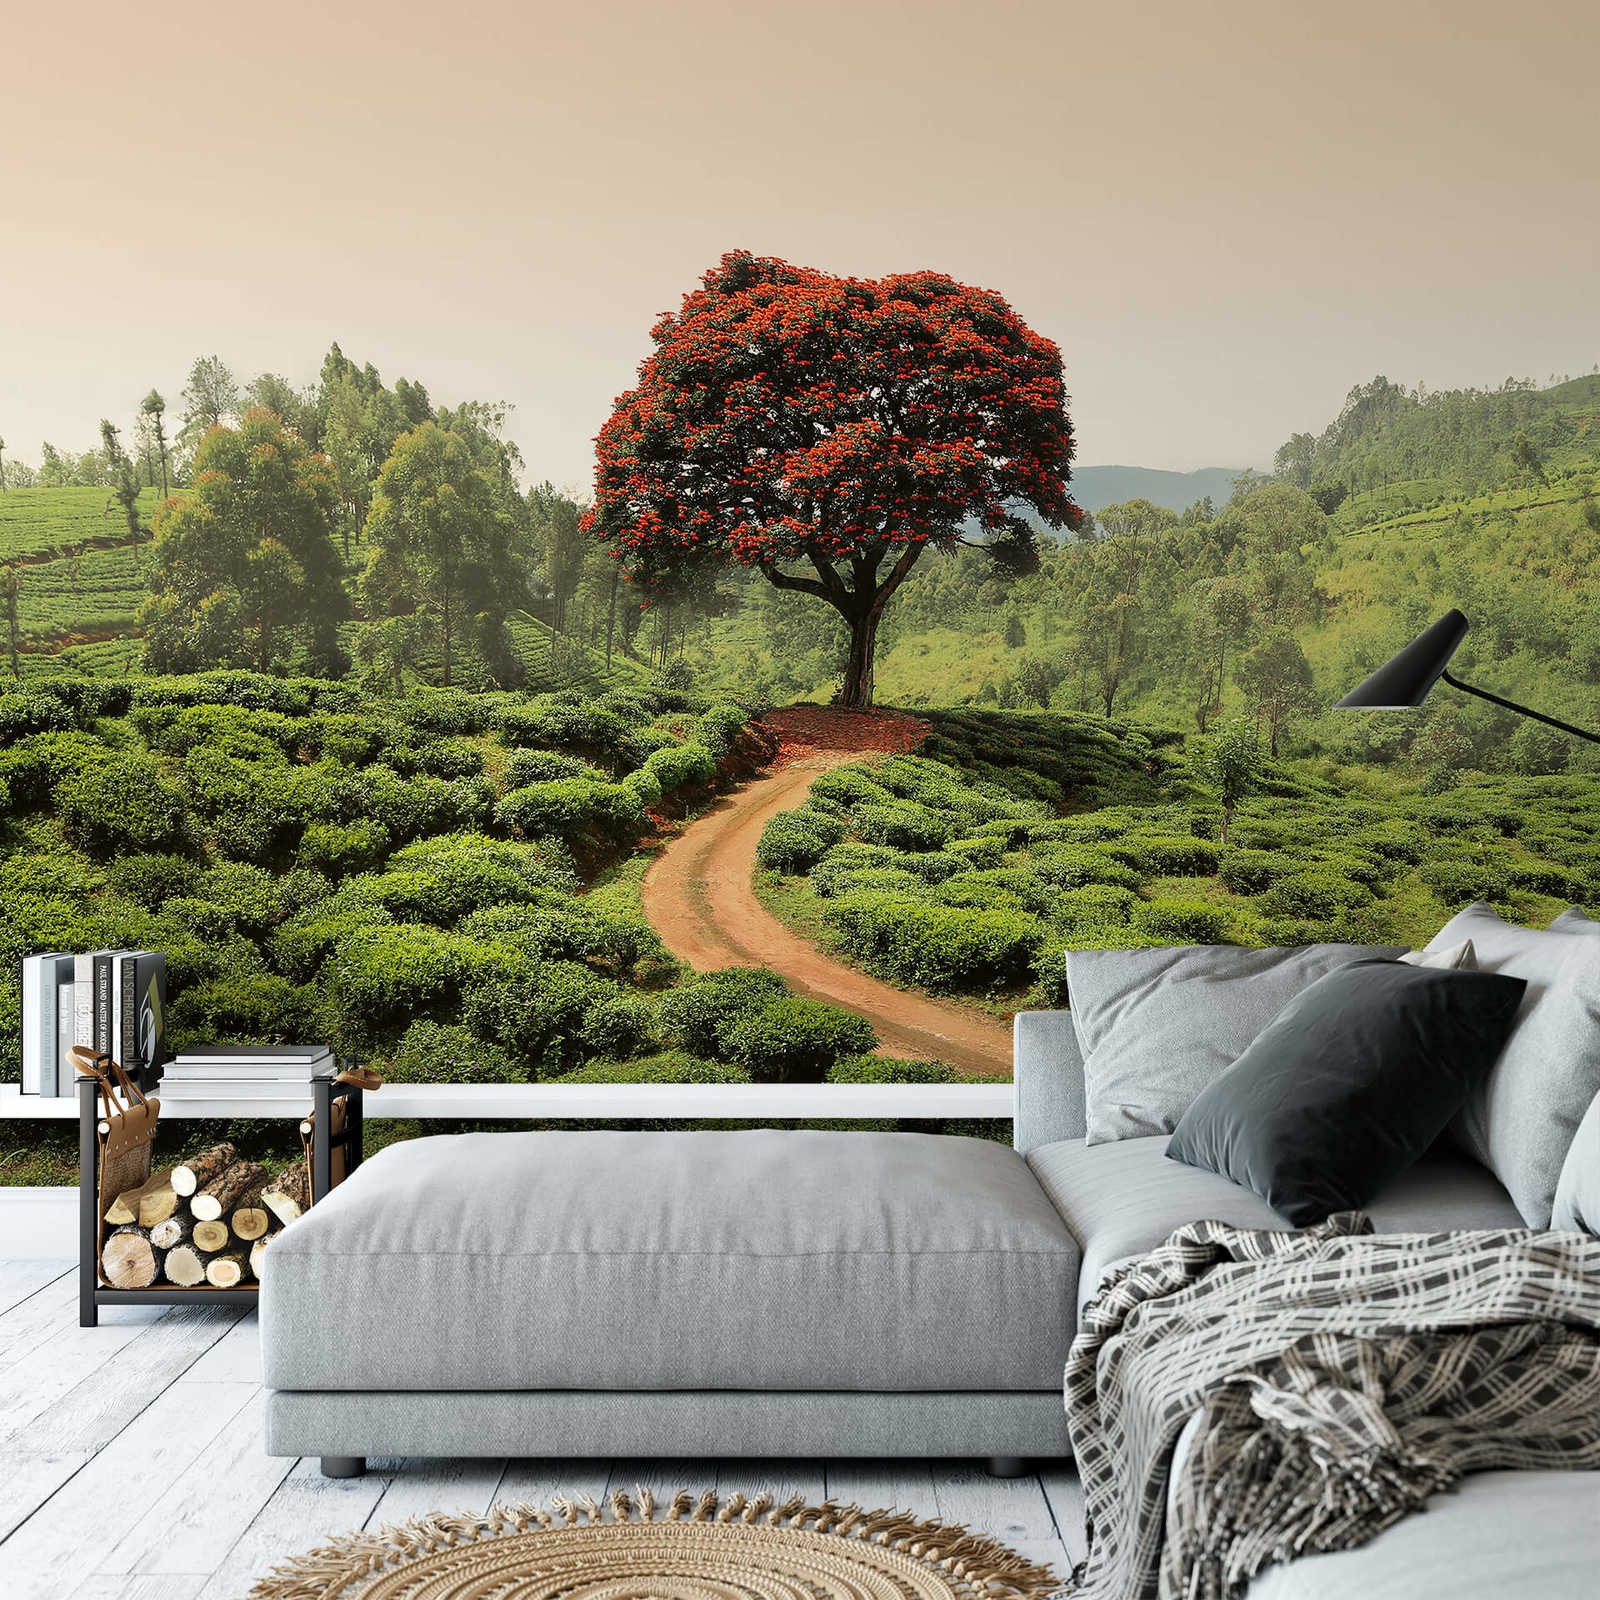             Muurschildering Sri Lanka Landschap - Groen, Rood, Bruin
        